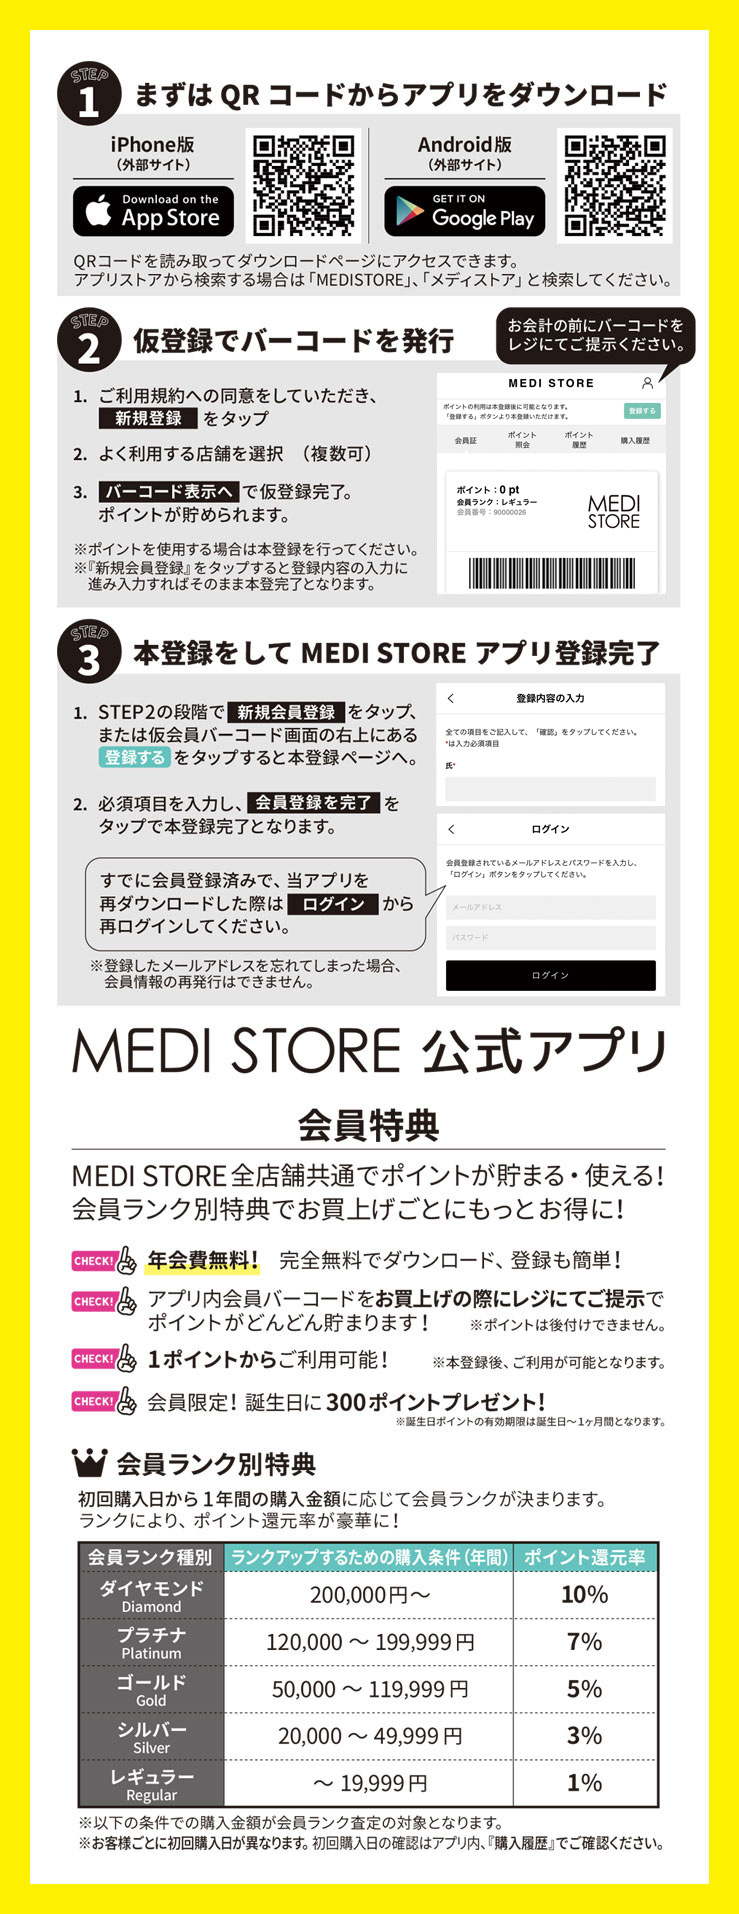 お知らせ Medi Storeアプリについて ボディピアス専門店 通販 Medi Store